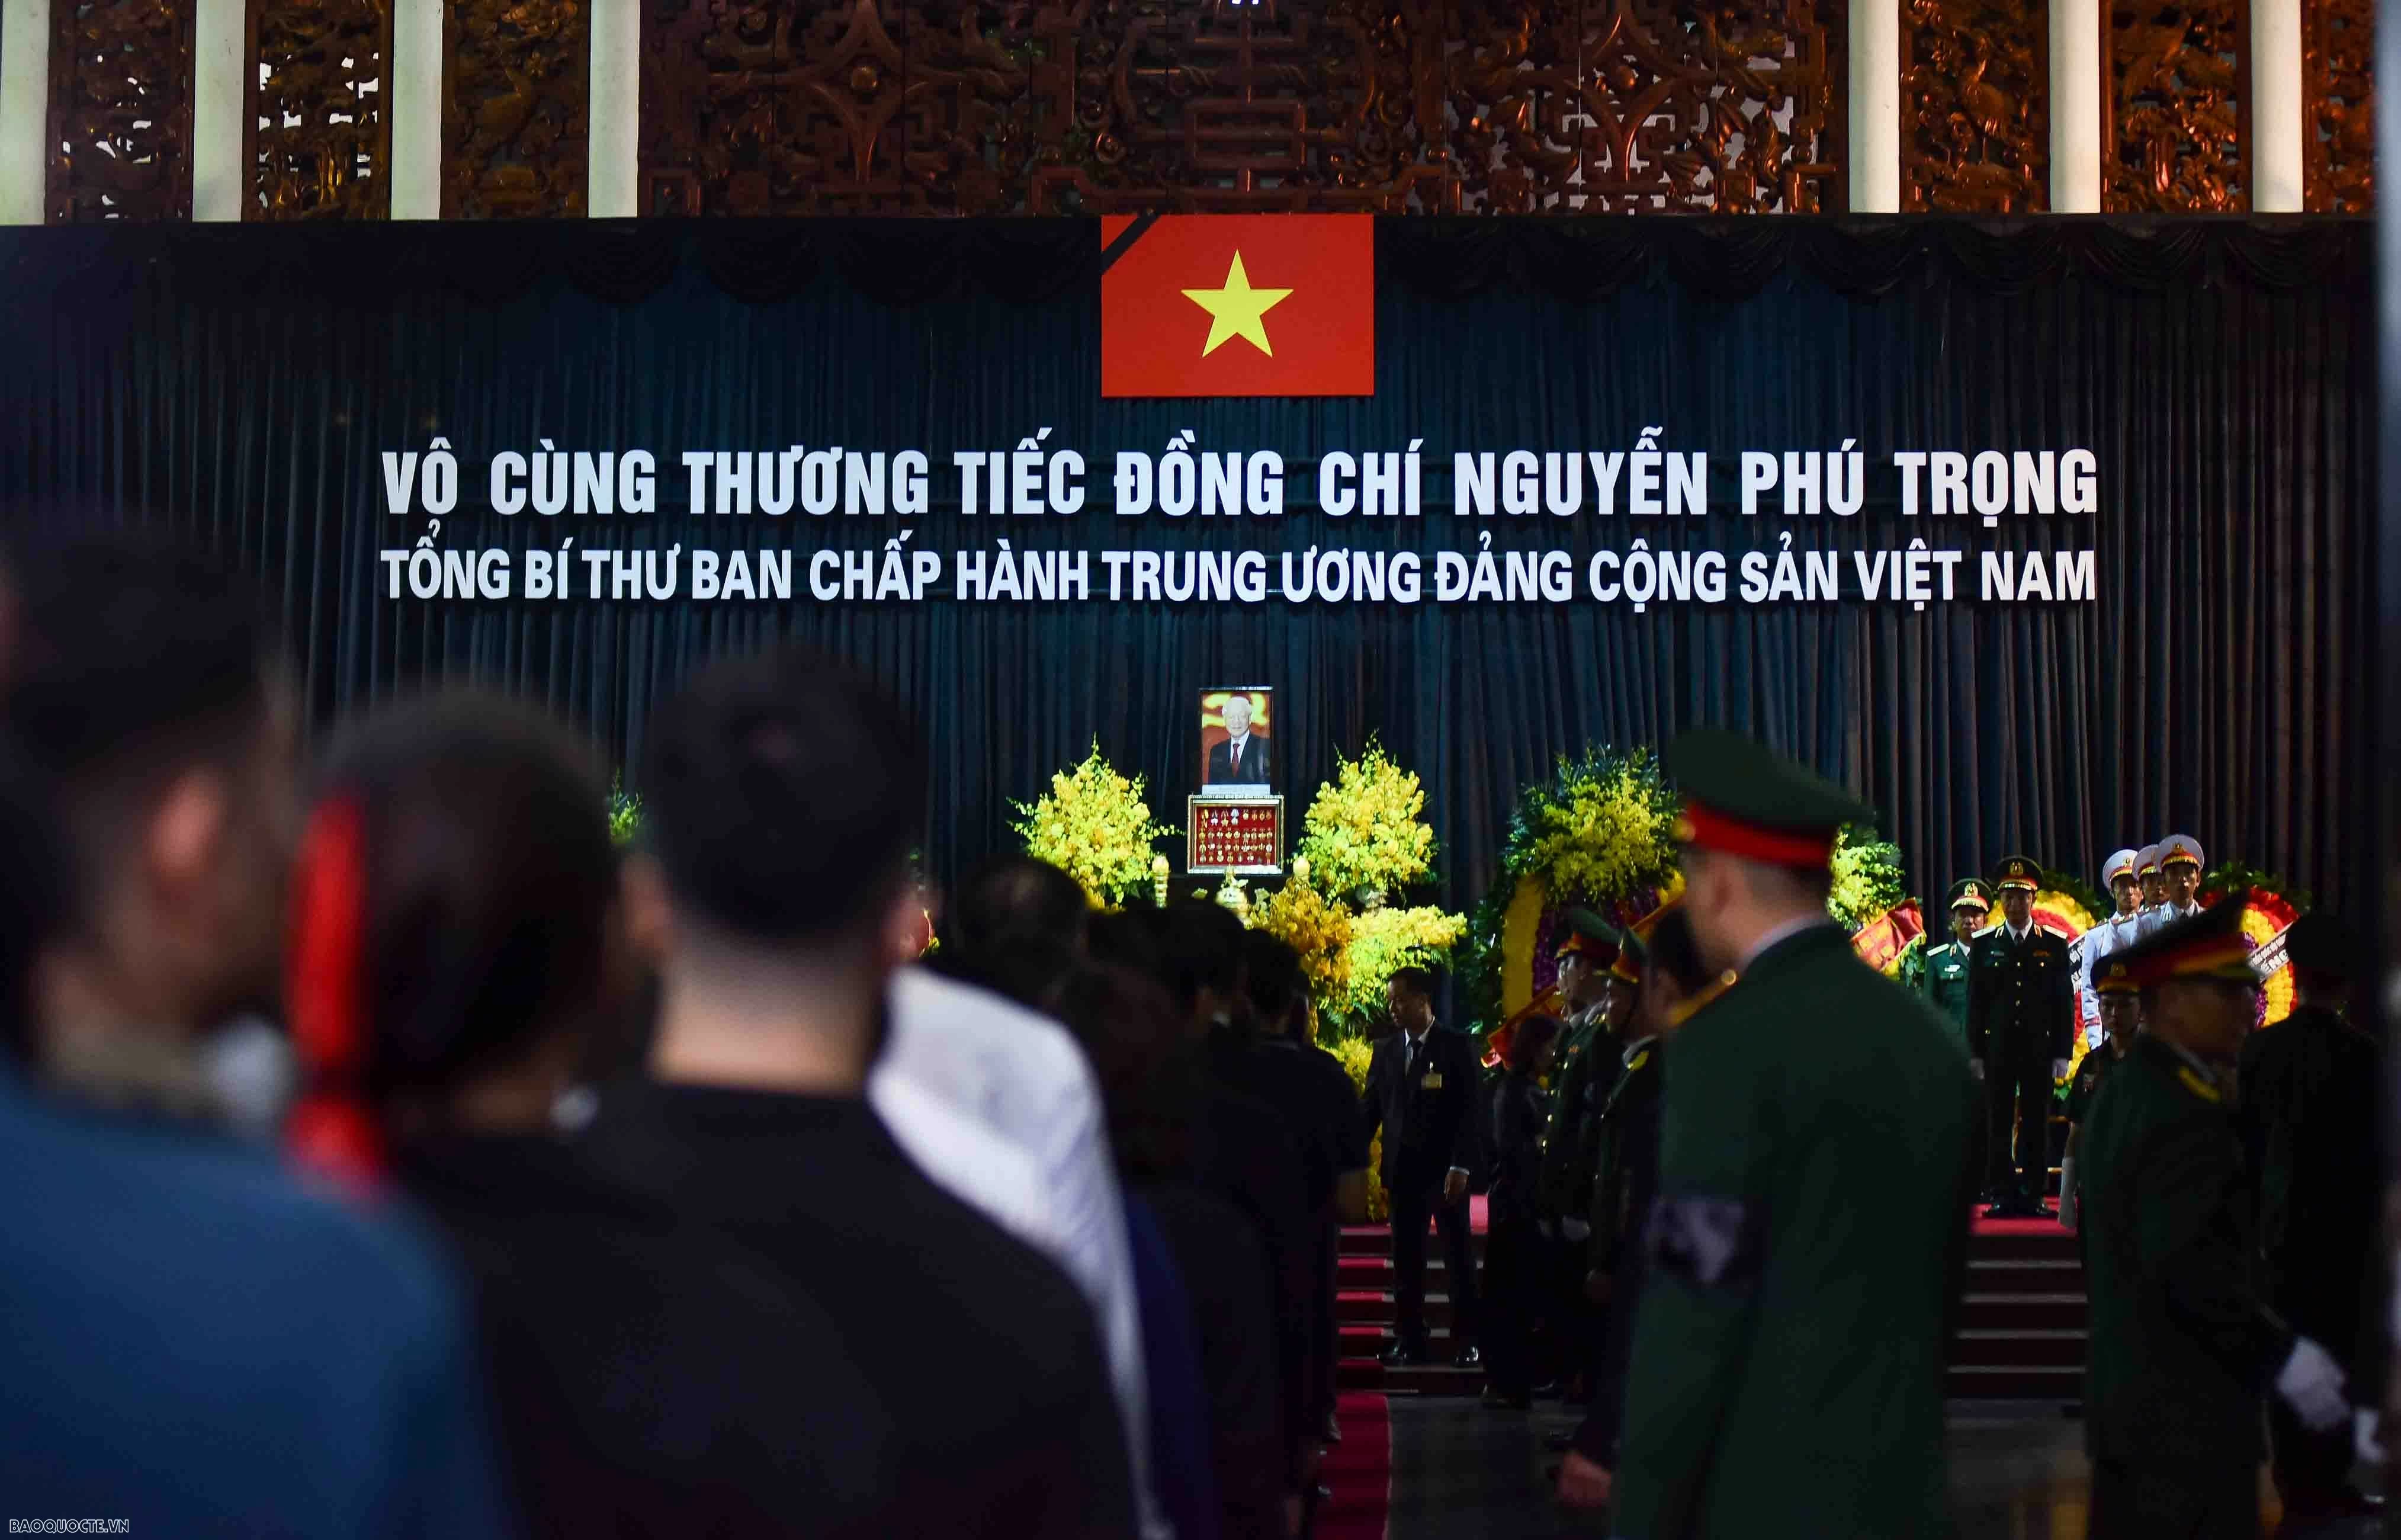 Từ 17h45, người dân được vào Nhà tang lễ quốc gia số 5 Trần Thánh Tông (Hà Nội) viếng Tổng Bí thư Nguyễn Phú Trọng. Trong nhà tang lễ, người dân được đi quanh linh cữu tiễn biệt Tổng Bí thư.